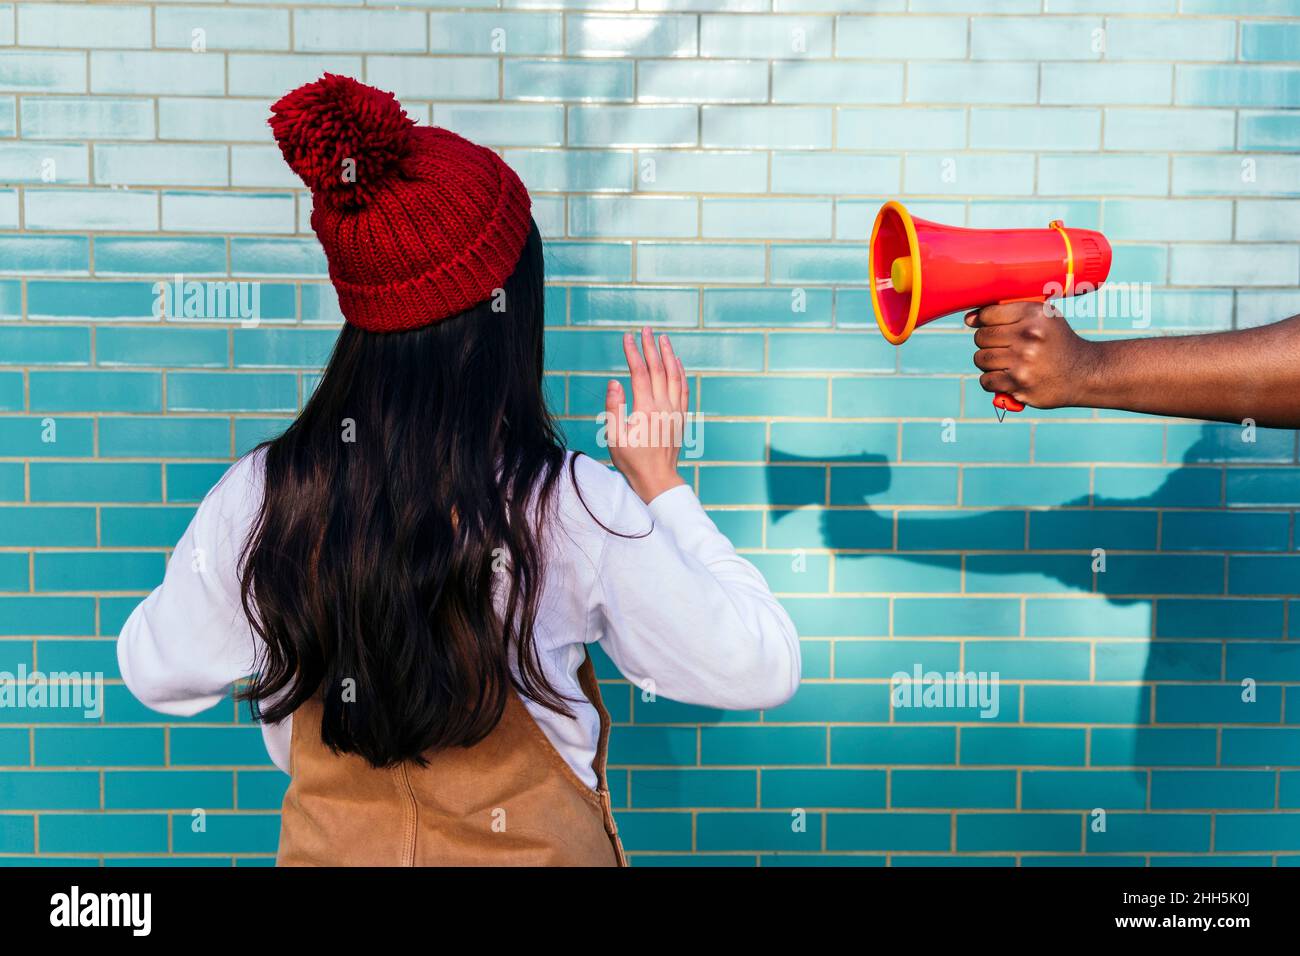 Main de l'homme tenant le mégaphone par une femme qui fait un geste devant un mur de briques turquoise Banque D'Images